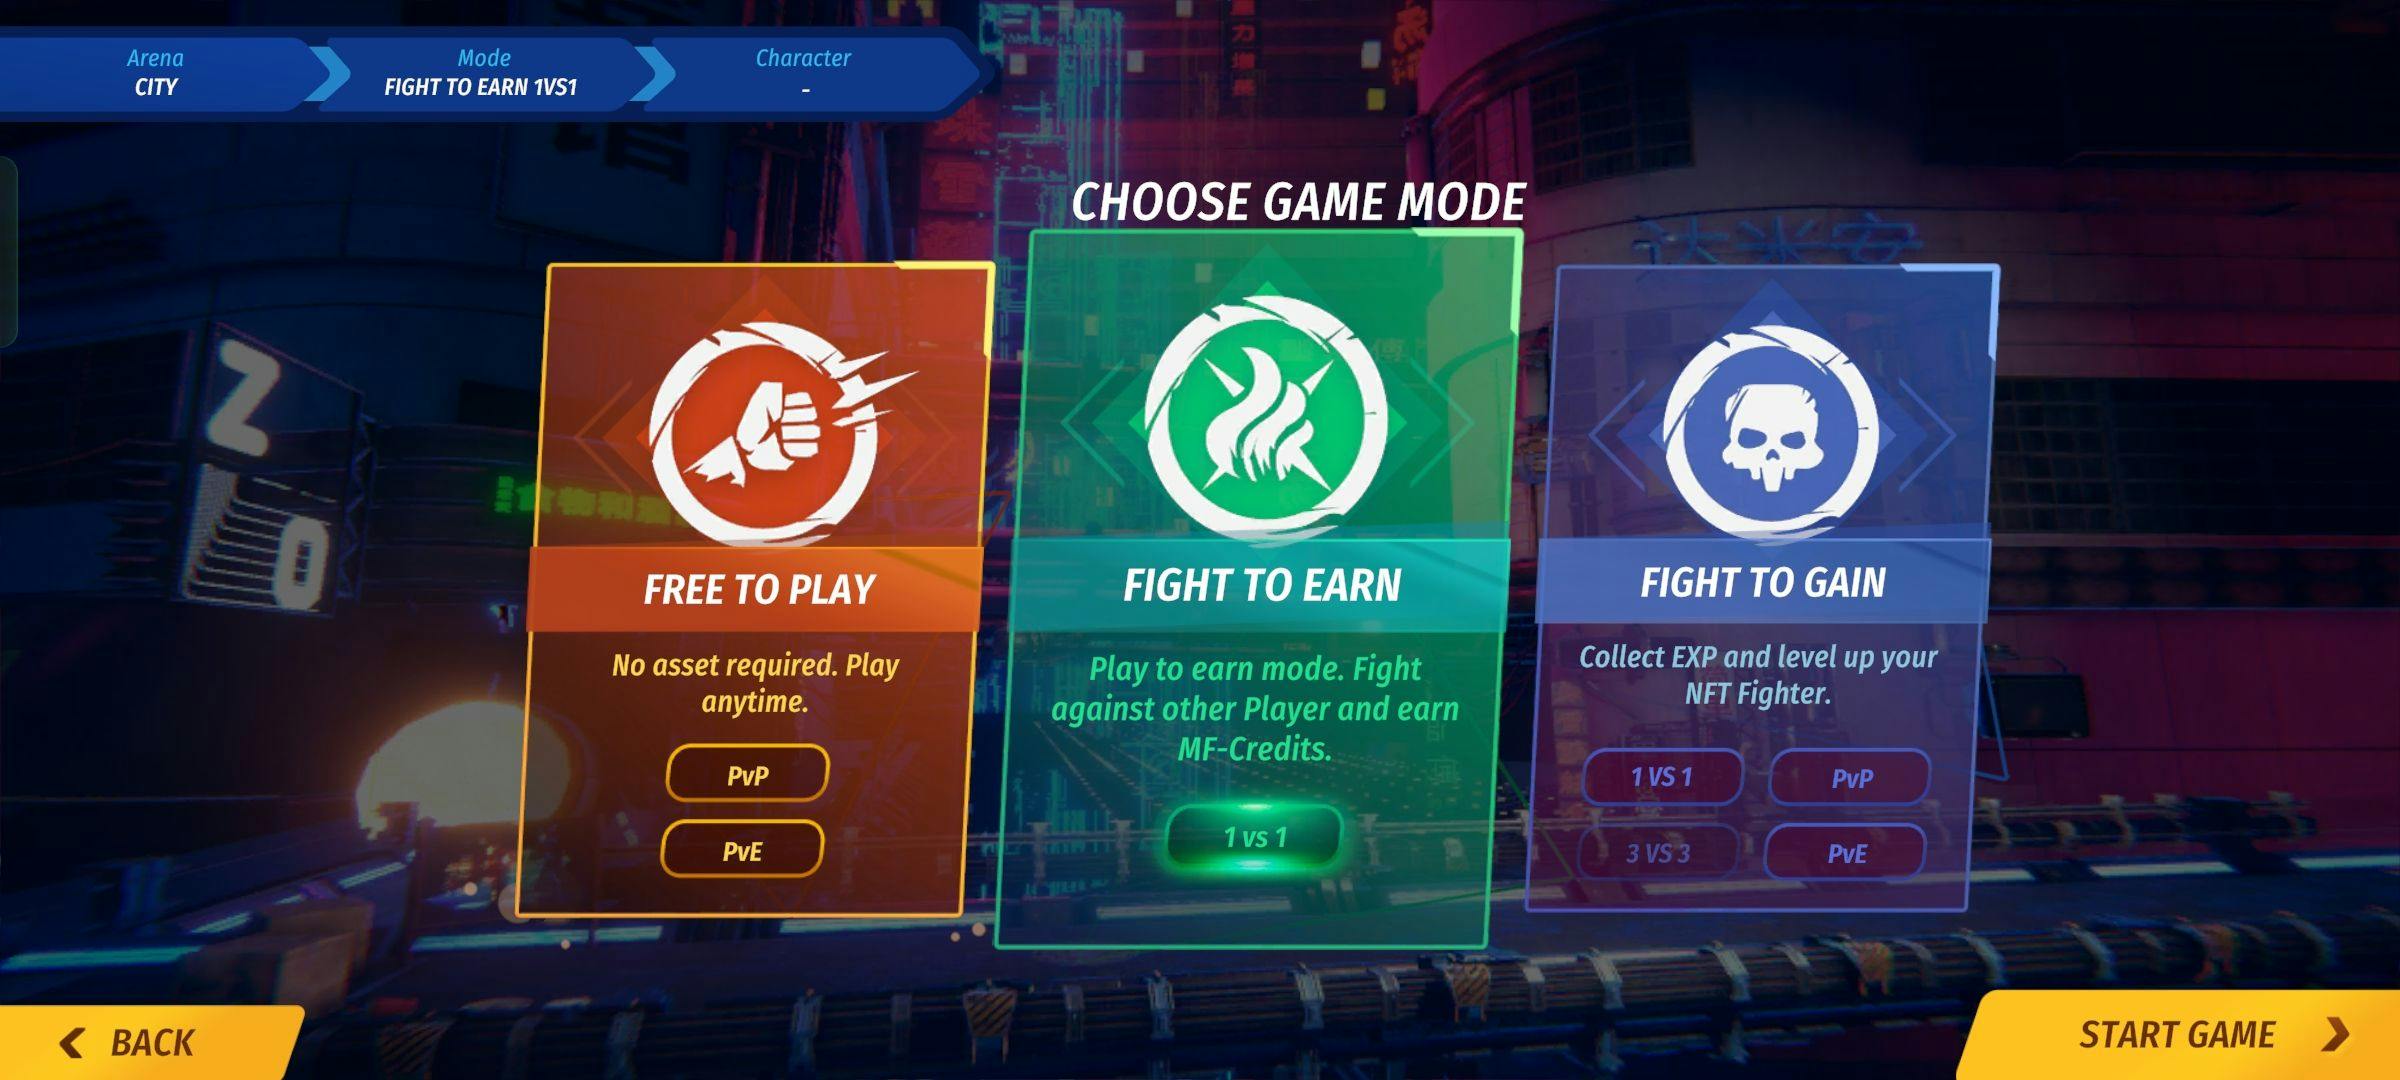 Metafighter screenshot gameplay.jpg